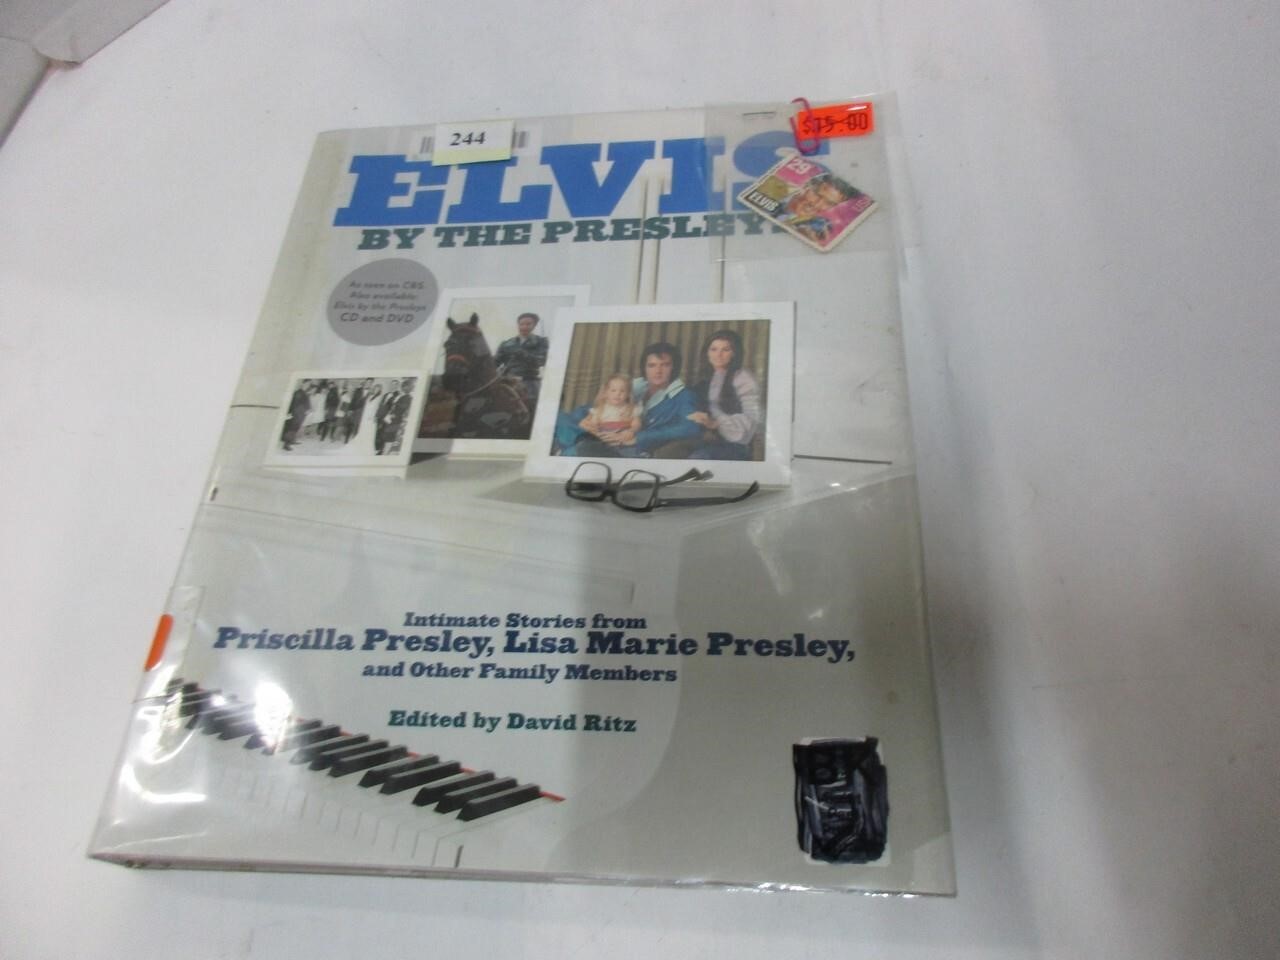 Elvis, by the Presleys, history book, Elvis stamp?